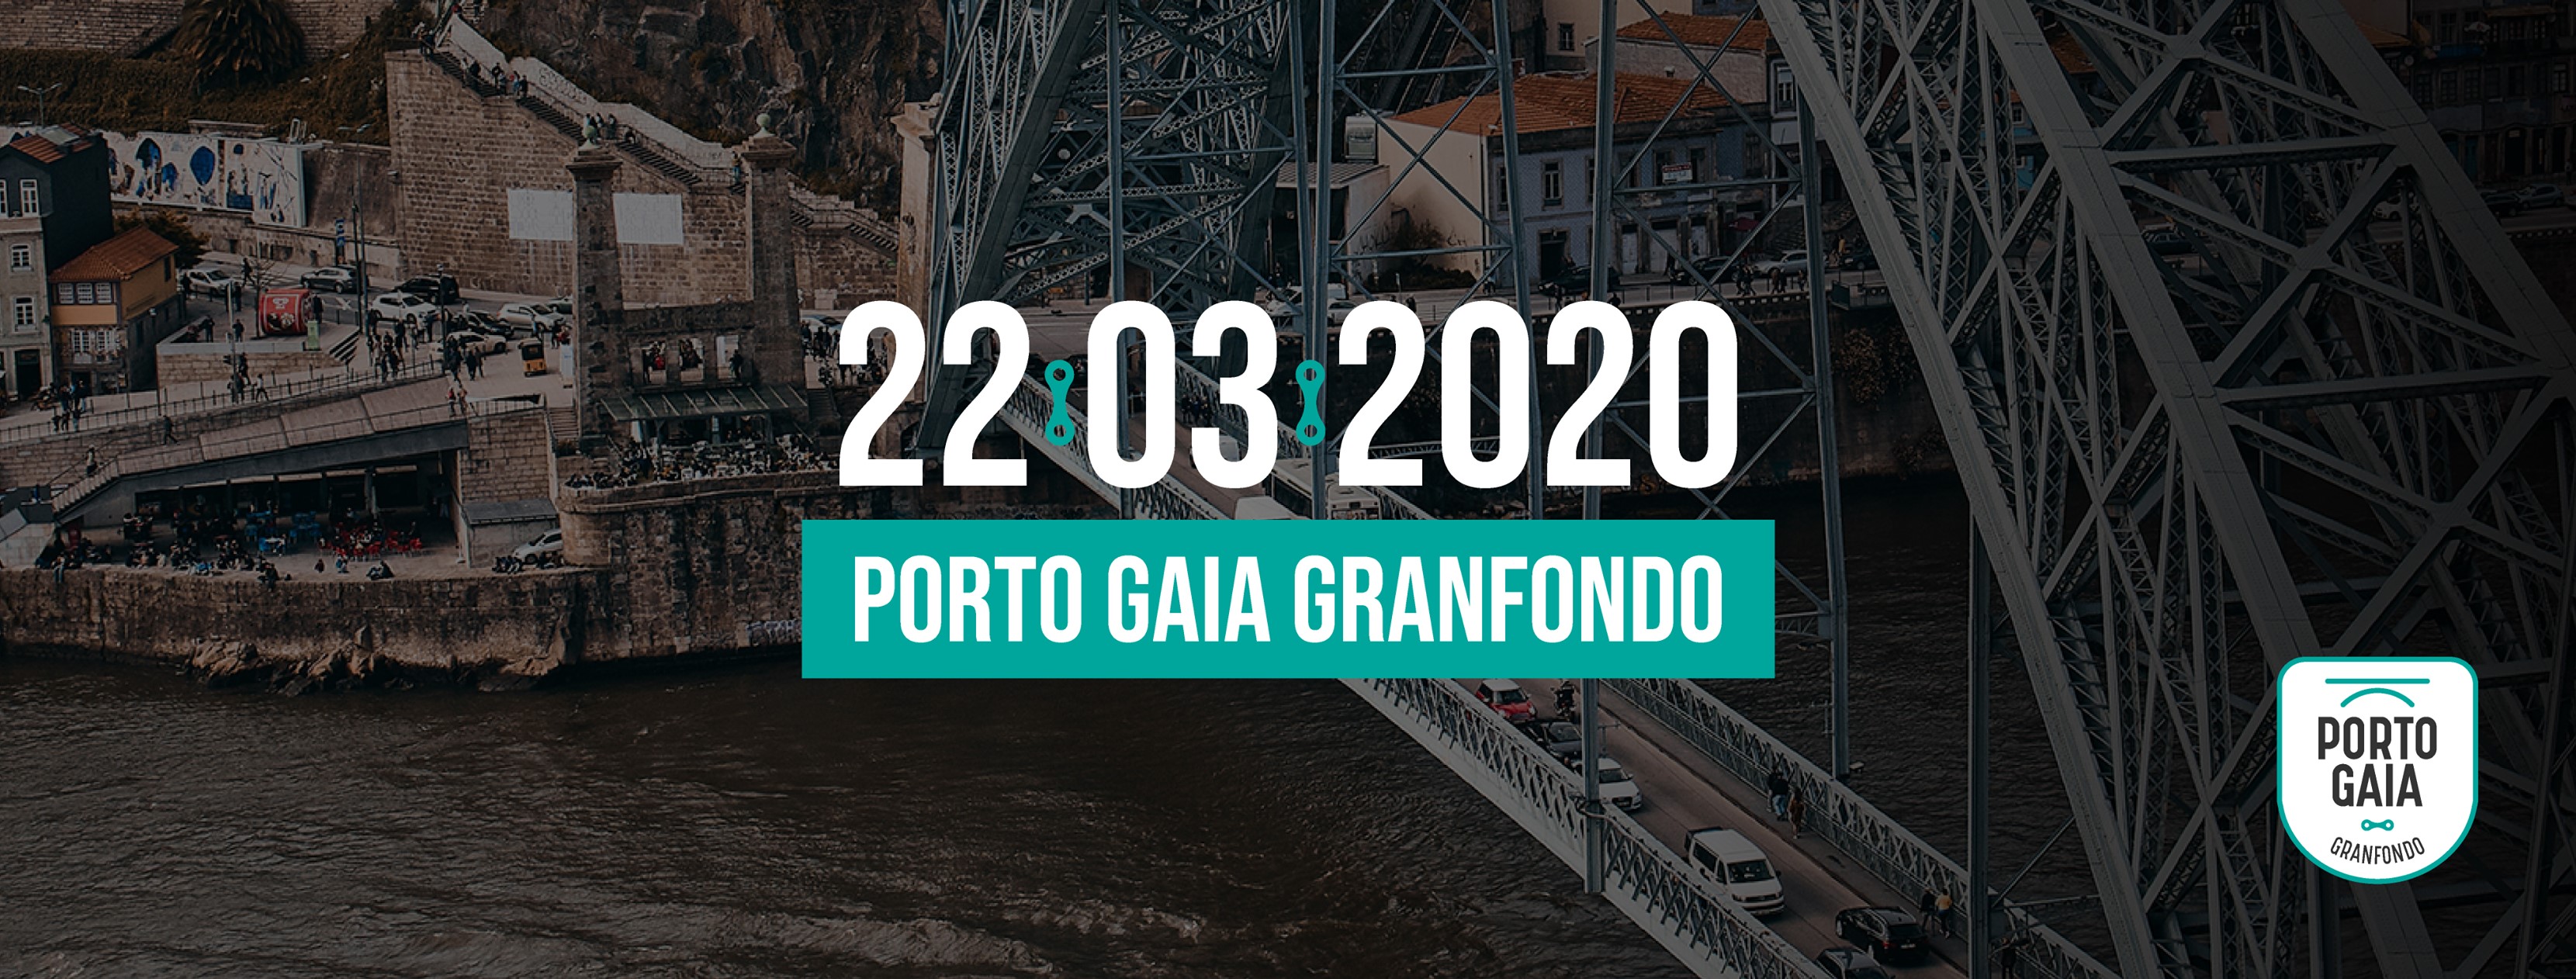 Granfondo Porto-Gaia